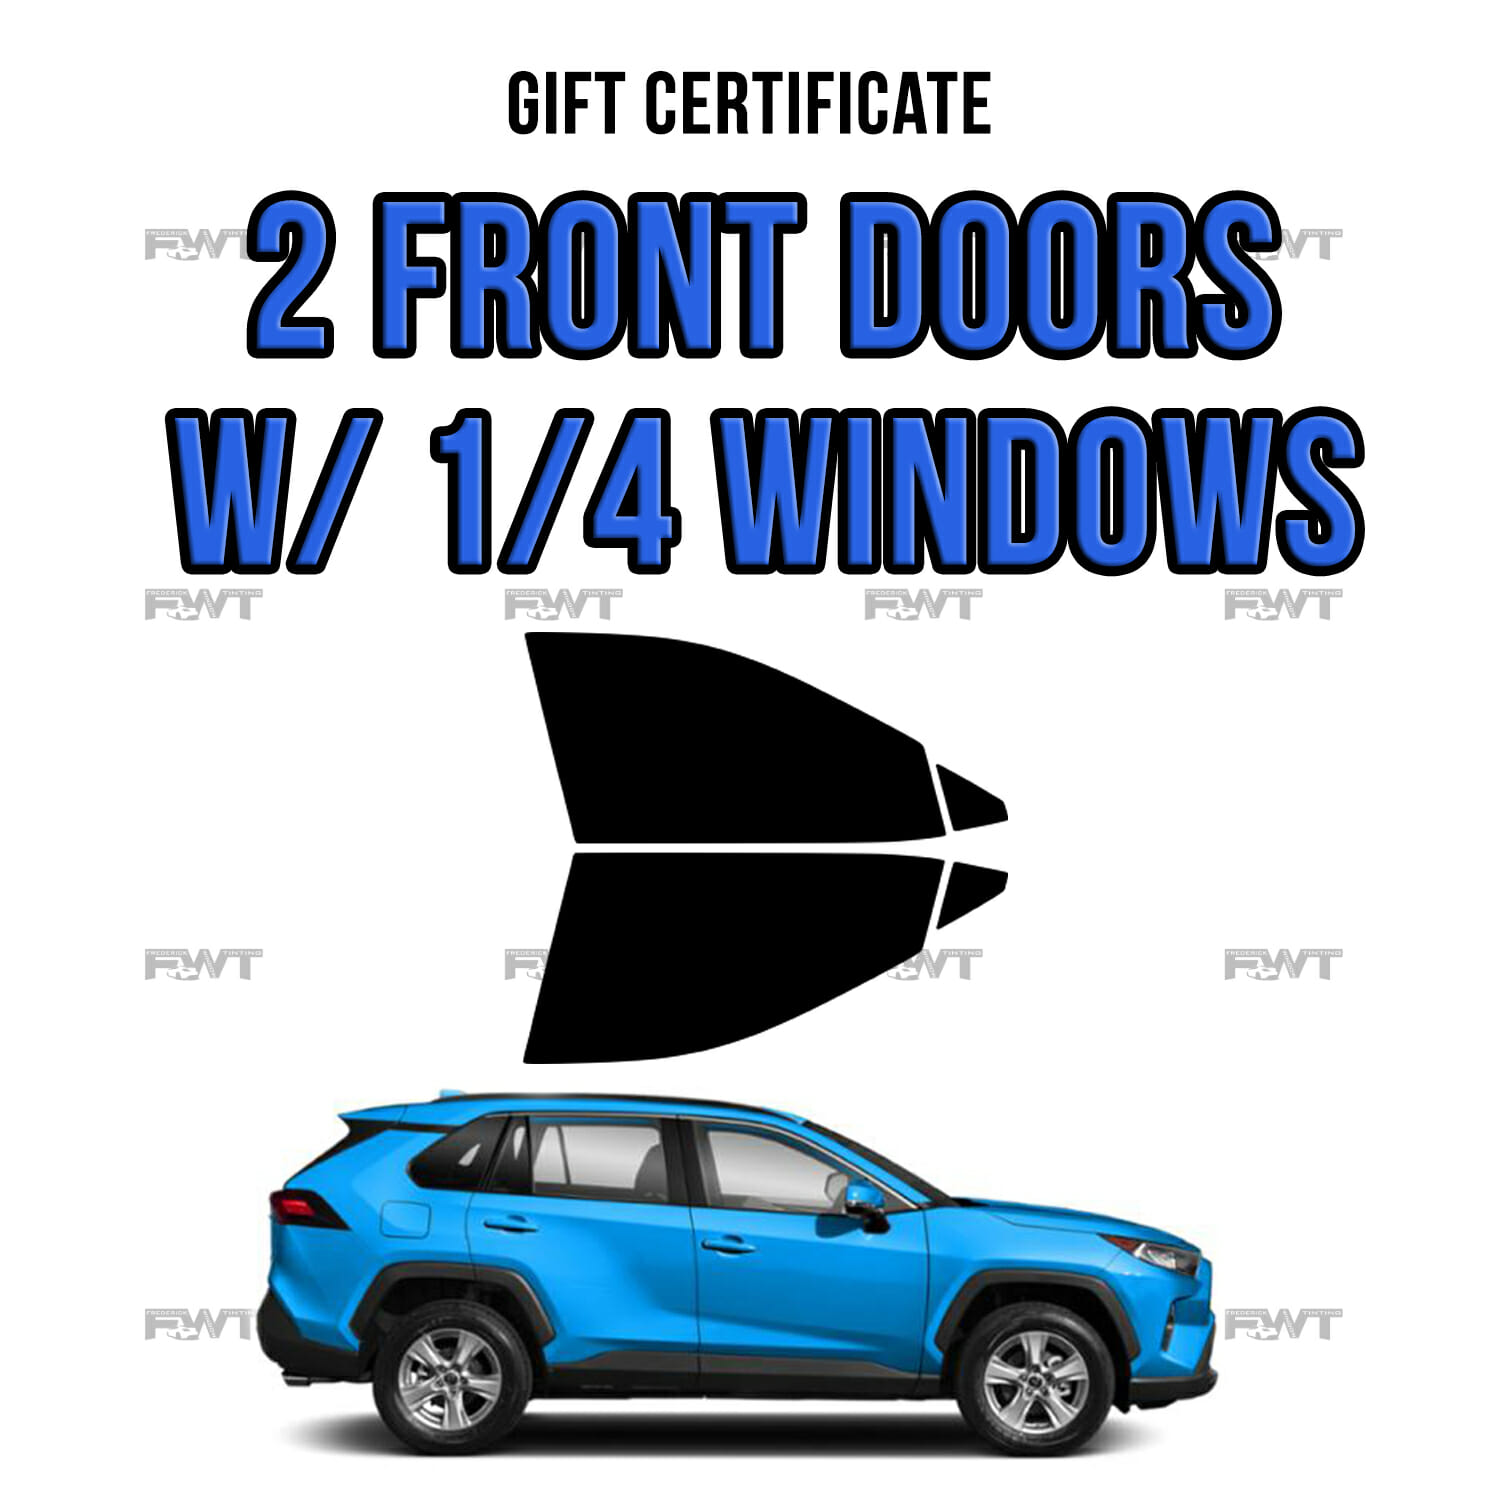 2 Front Doors w/ 1/4 Windows - $180.00